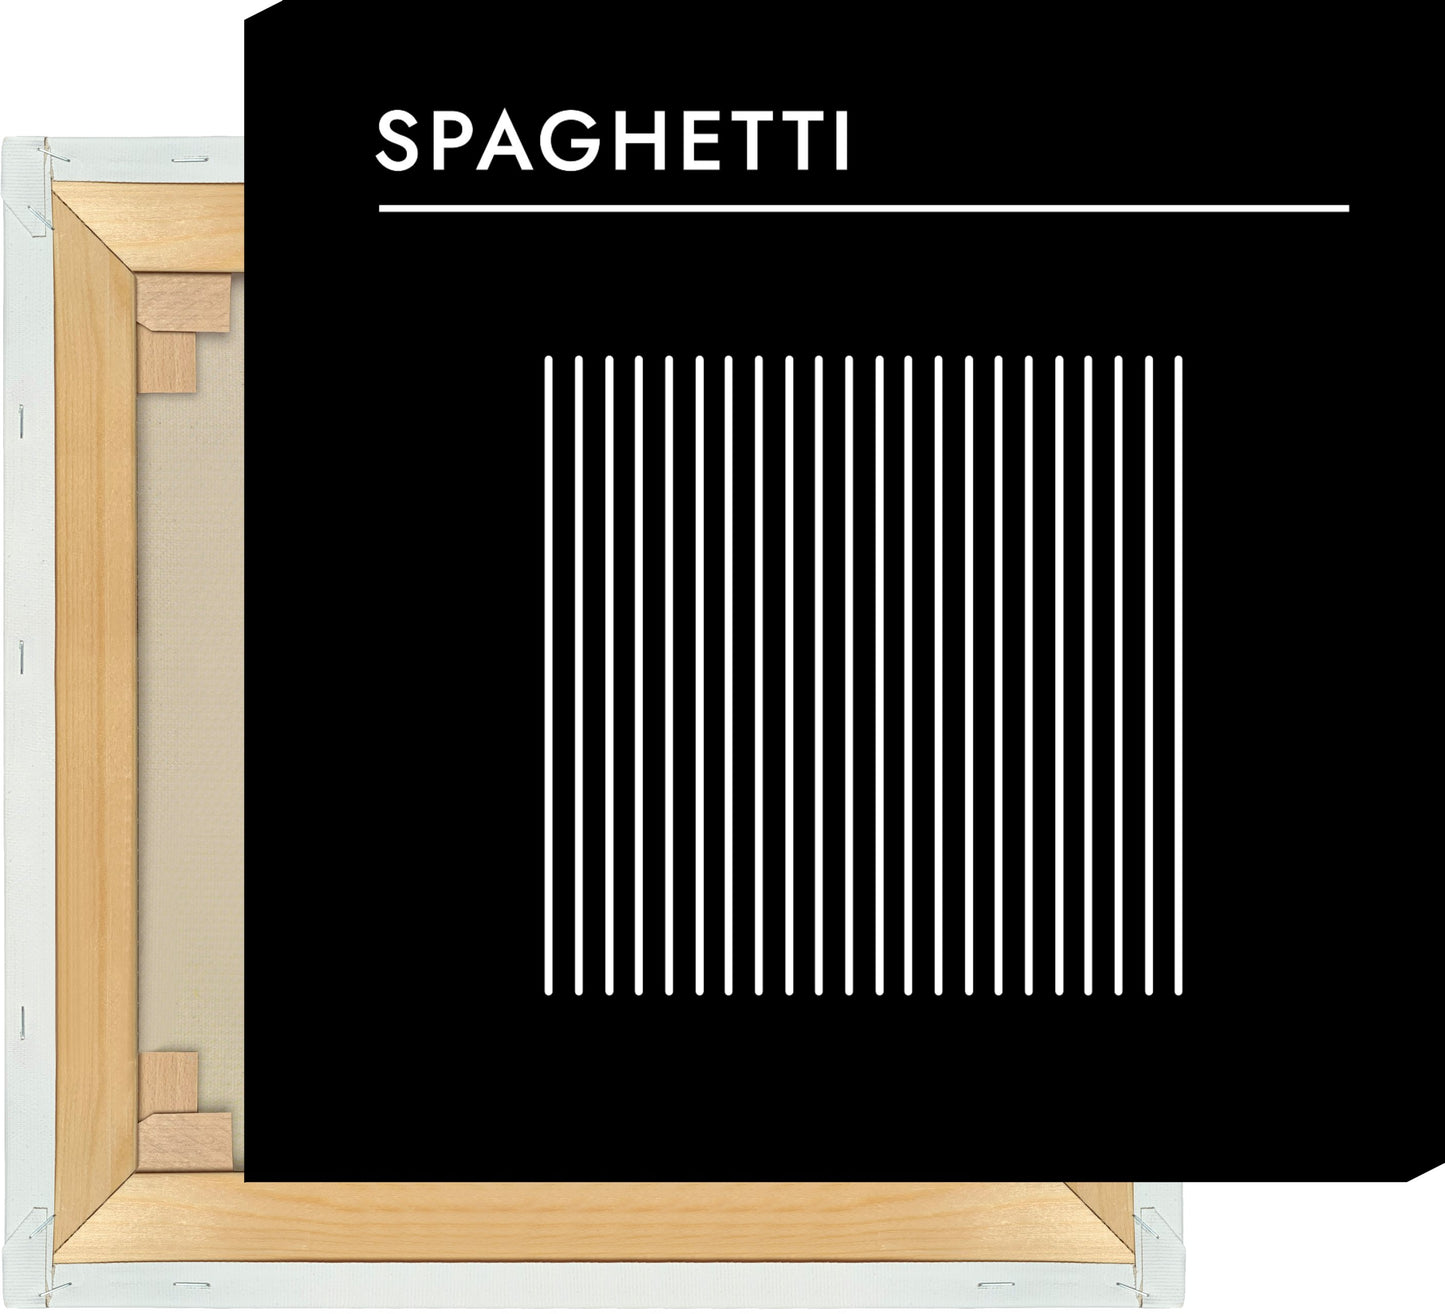 Leinwand Pasta - Spaghetti #2